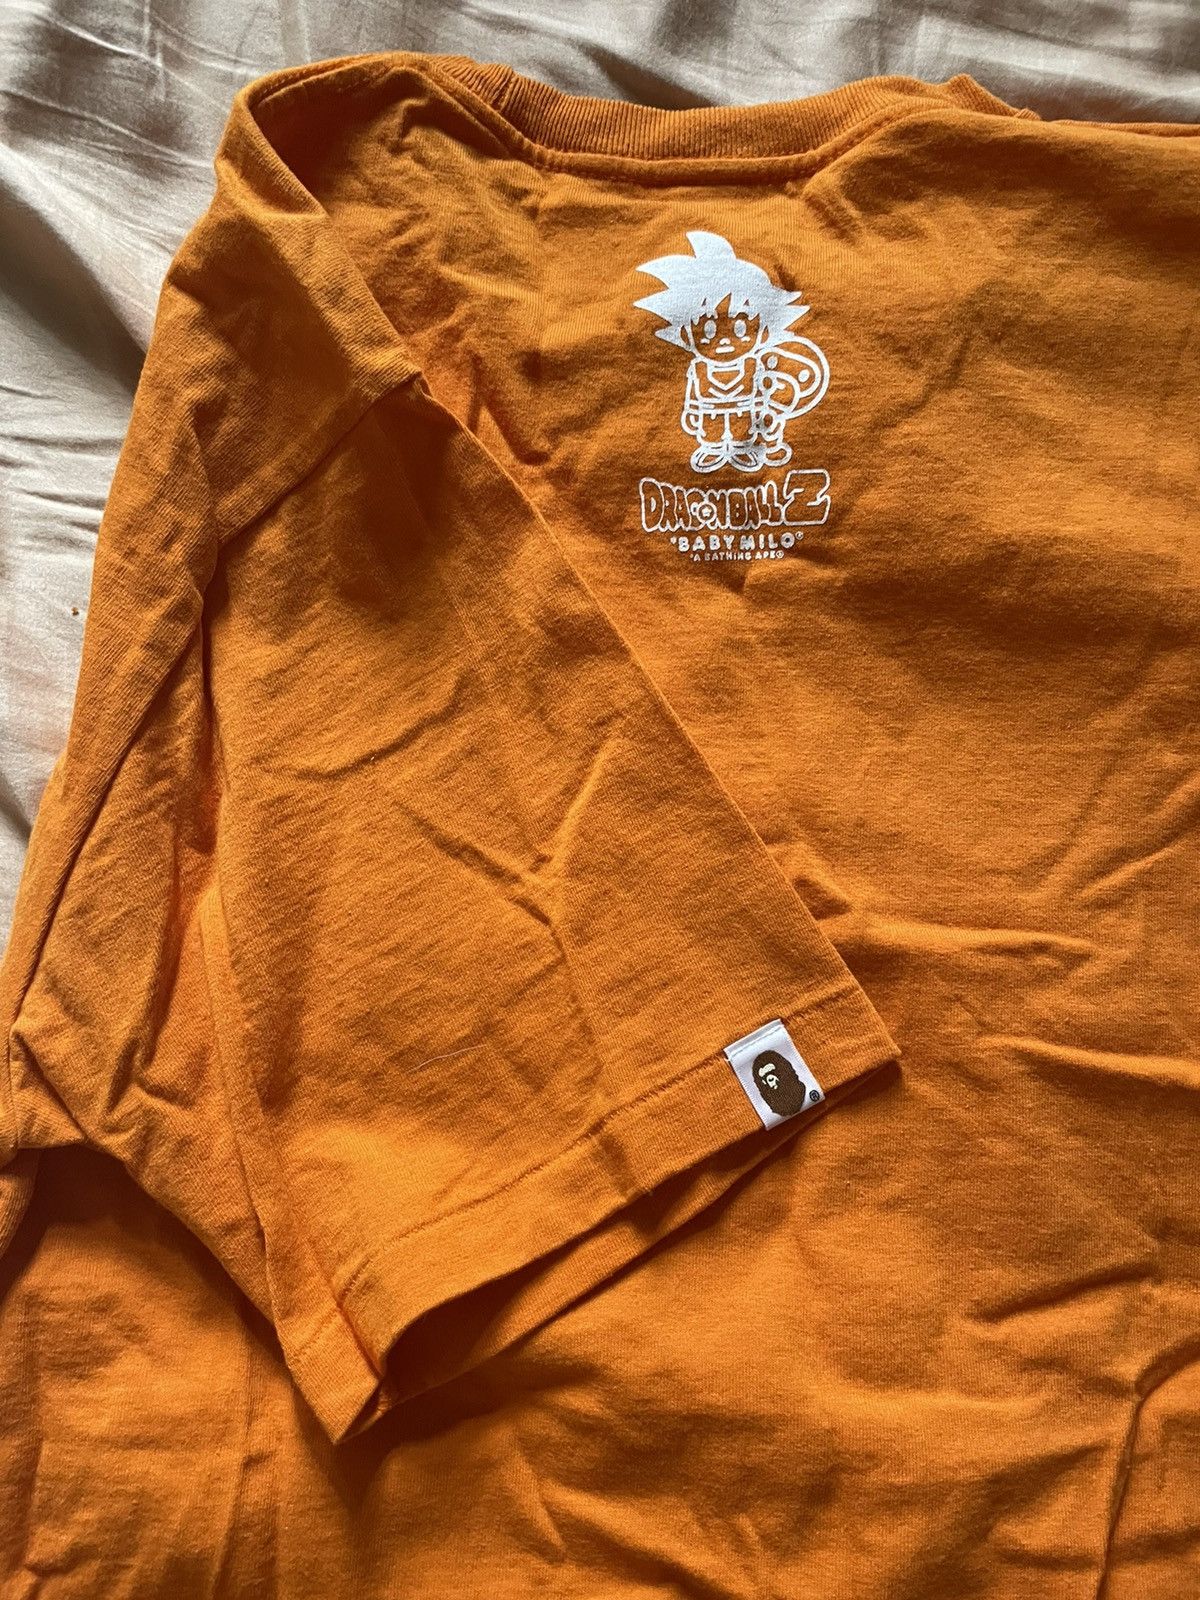 Bape Bape Dragon ball Z Vegeta Gohan Krillin Milo Orange T Shirt Size US L / EU 52-54 / 3 - 8 Thumbnail